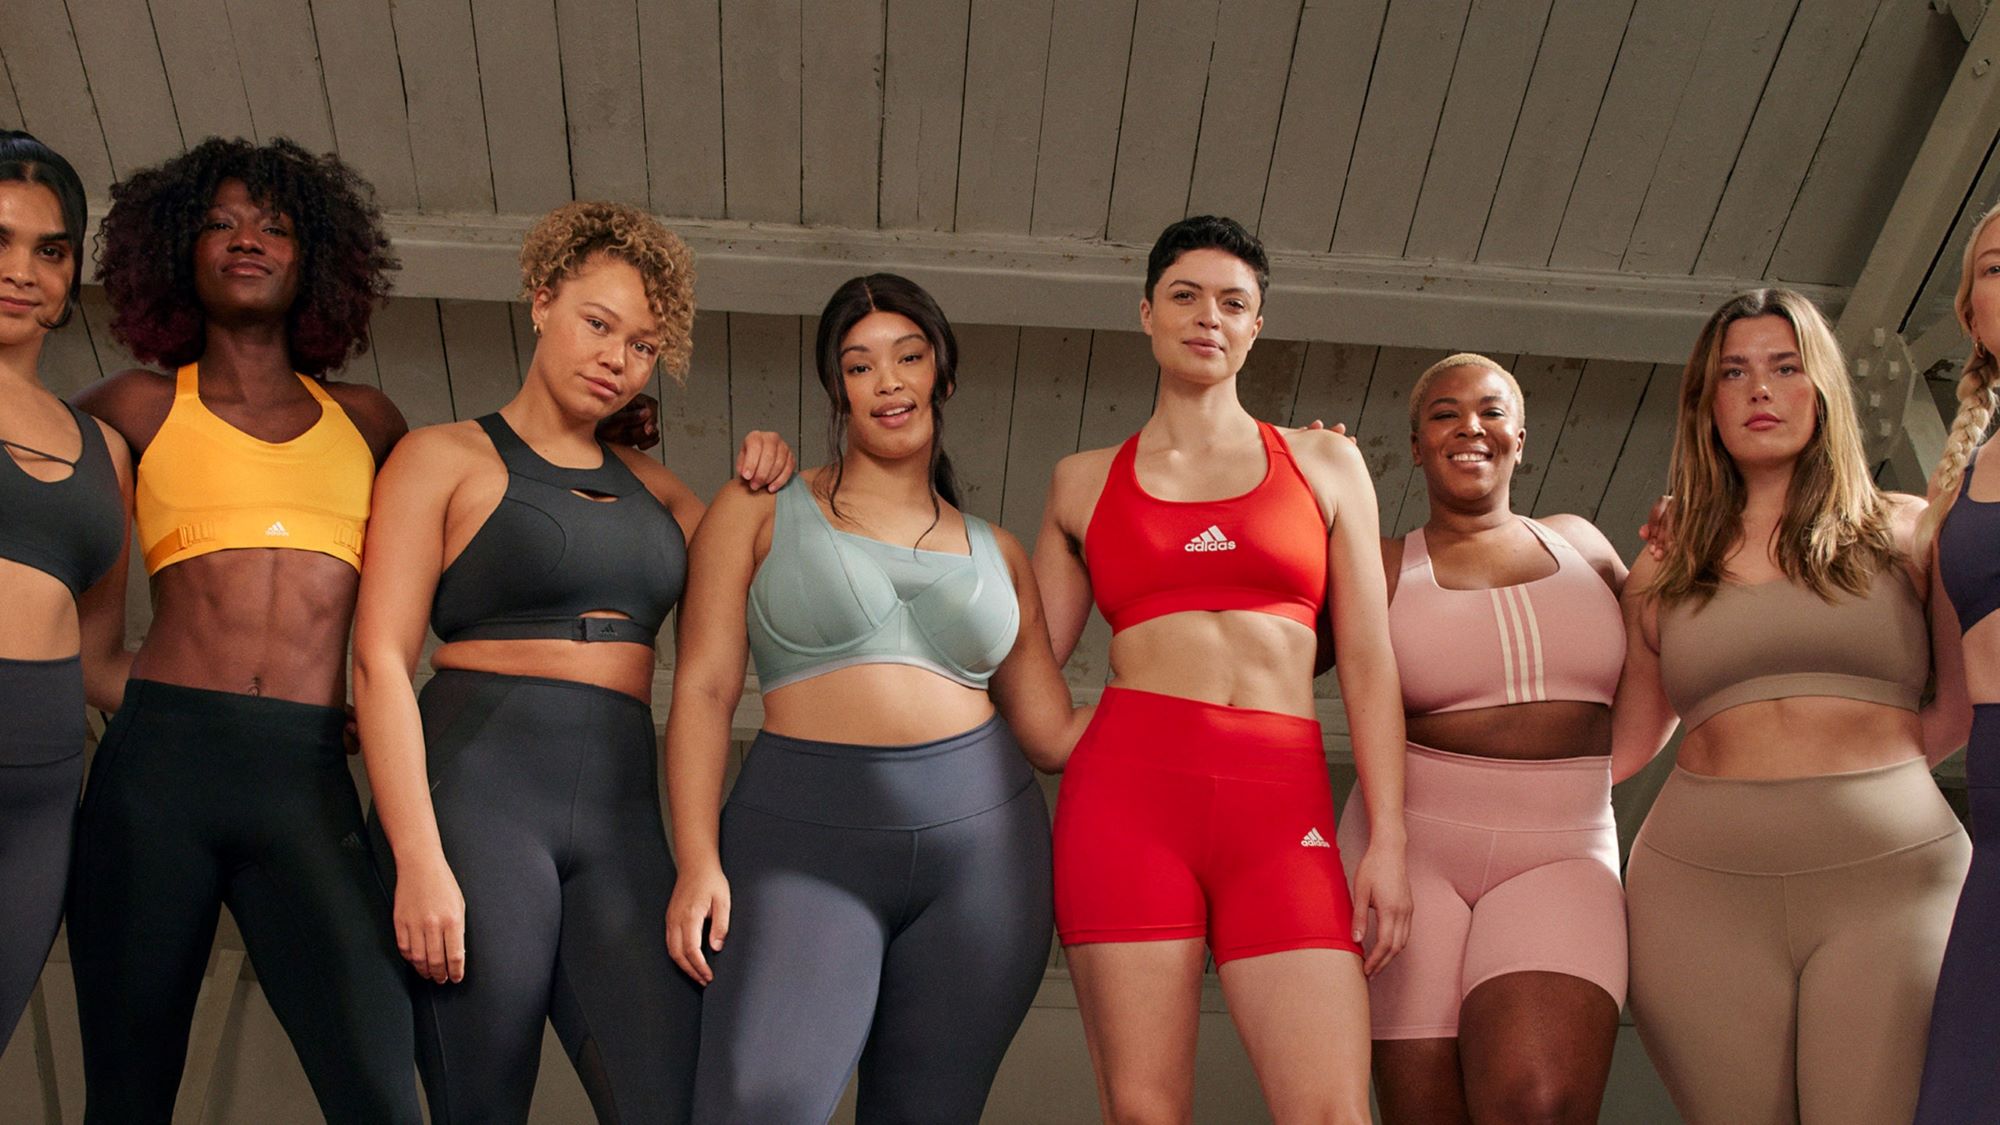 protesta barbilla Tormenta Un collage de 25 pechos femeninos, la nueva campaña Shockvertising de Adidas  - Adhertising